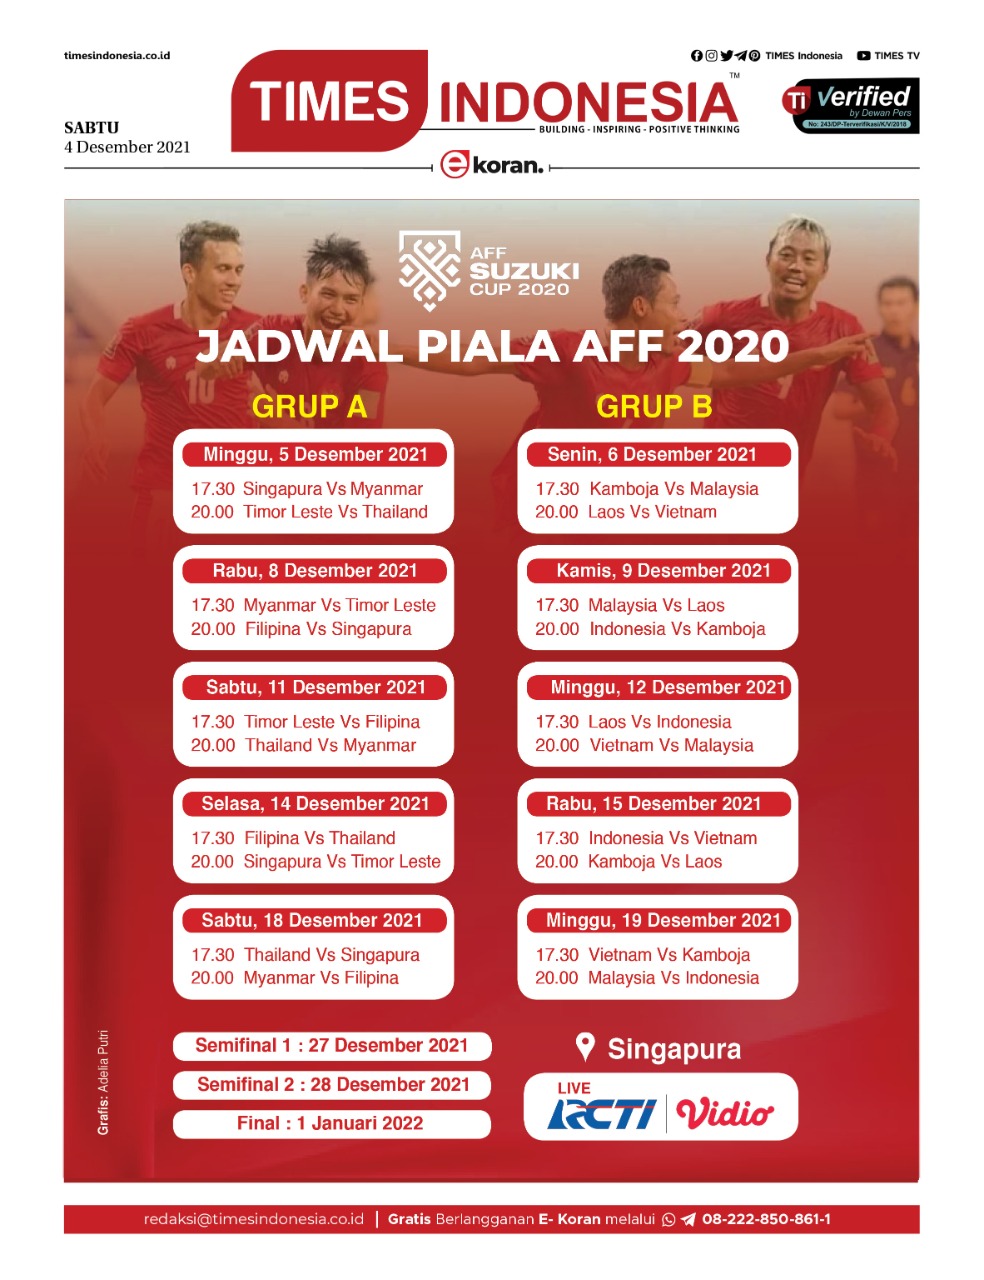 Jadwal timnas indonesia aff 2021